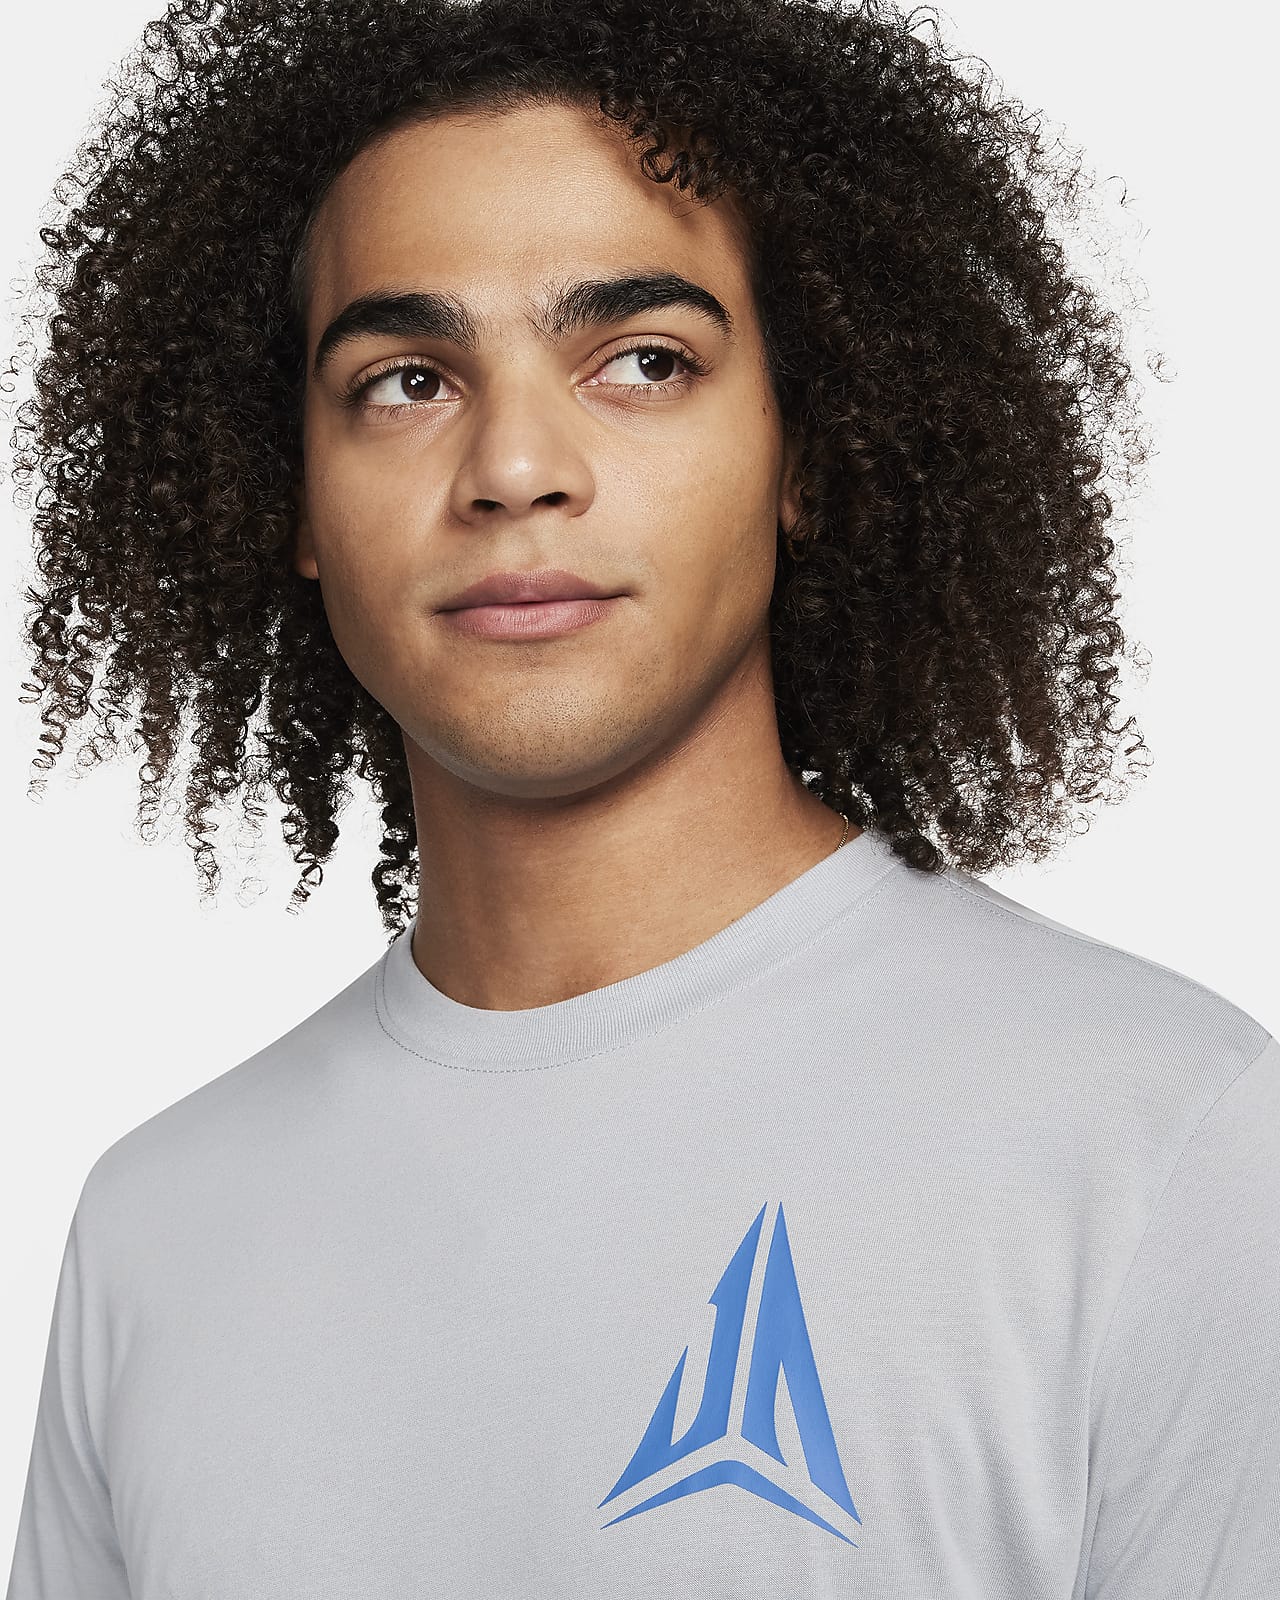 JA Men's Nike Dri-FIT Basketball T-Shirt